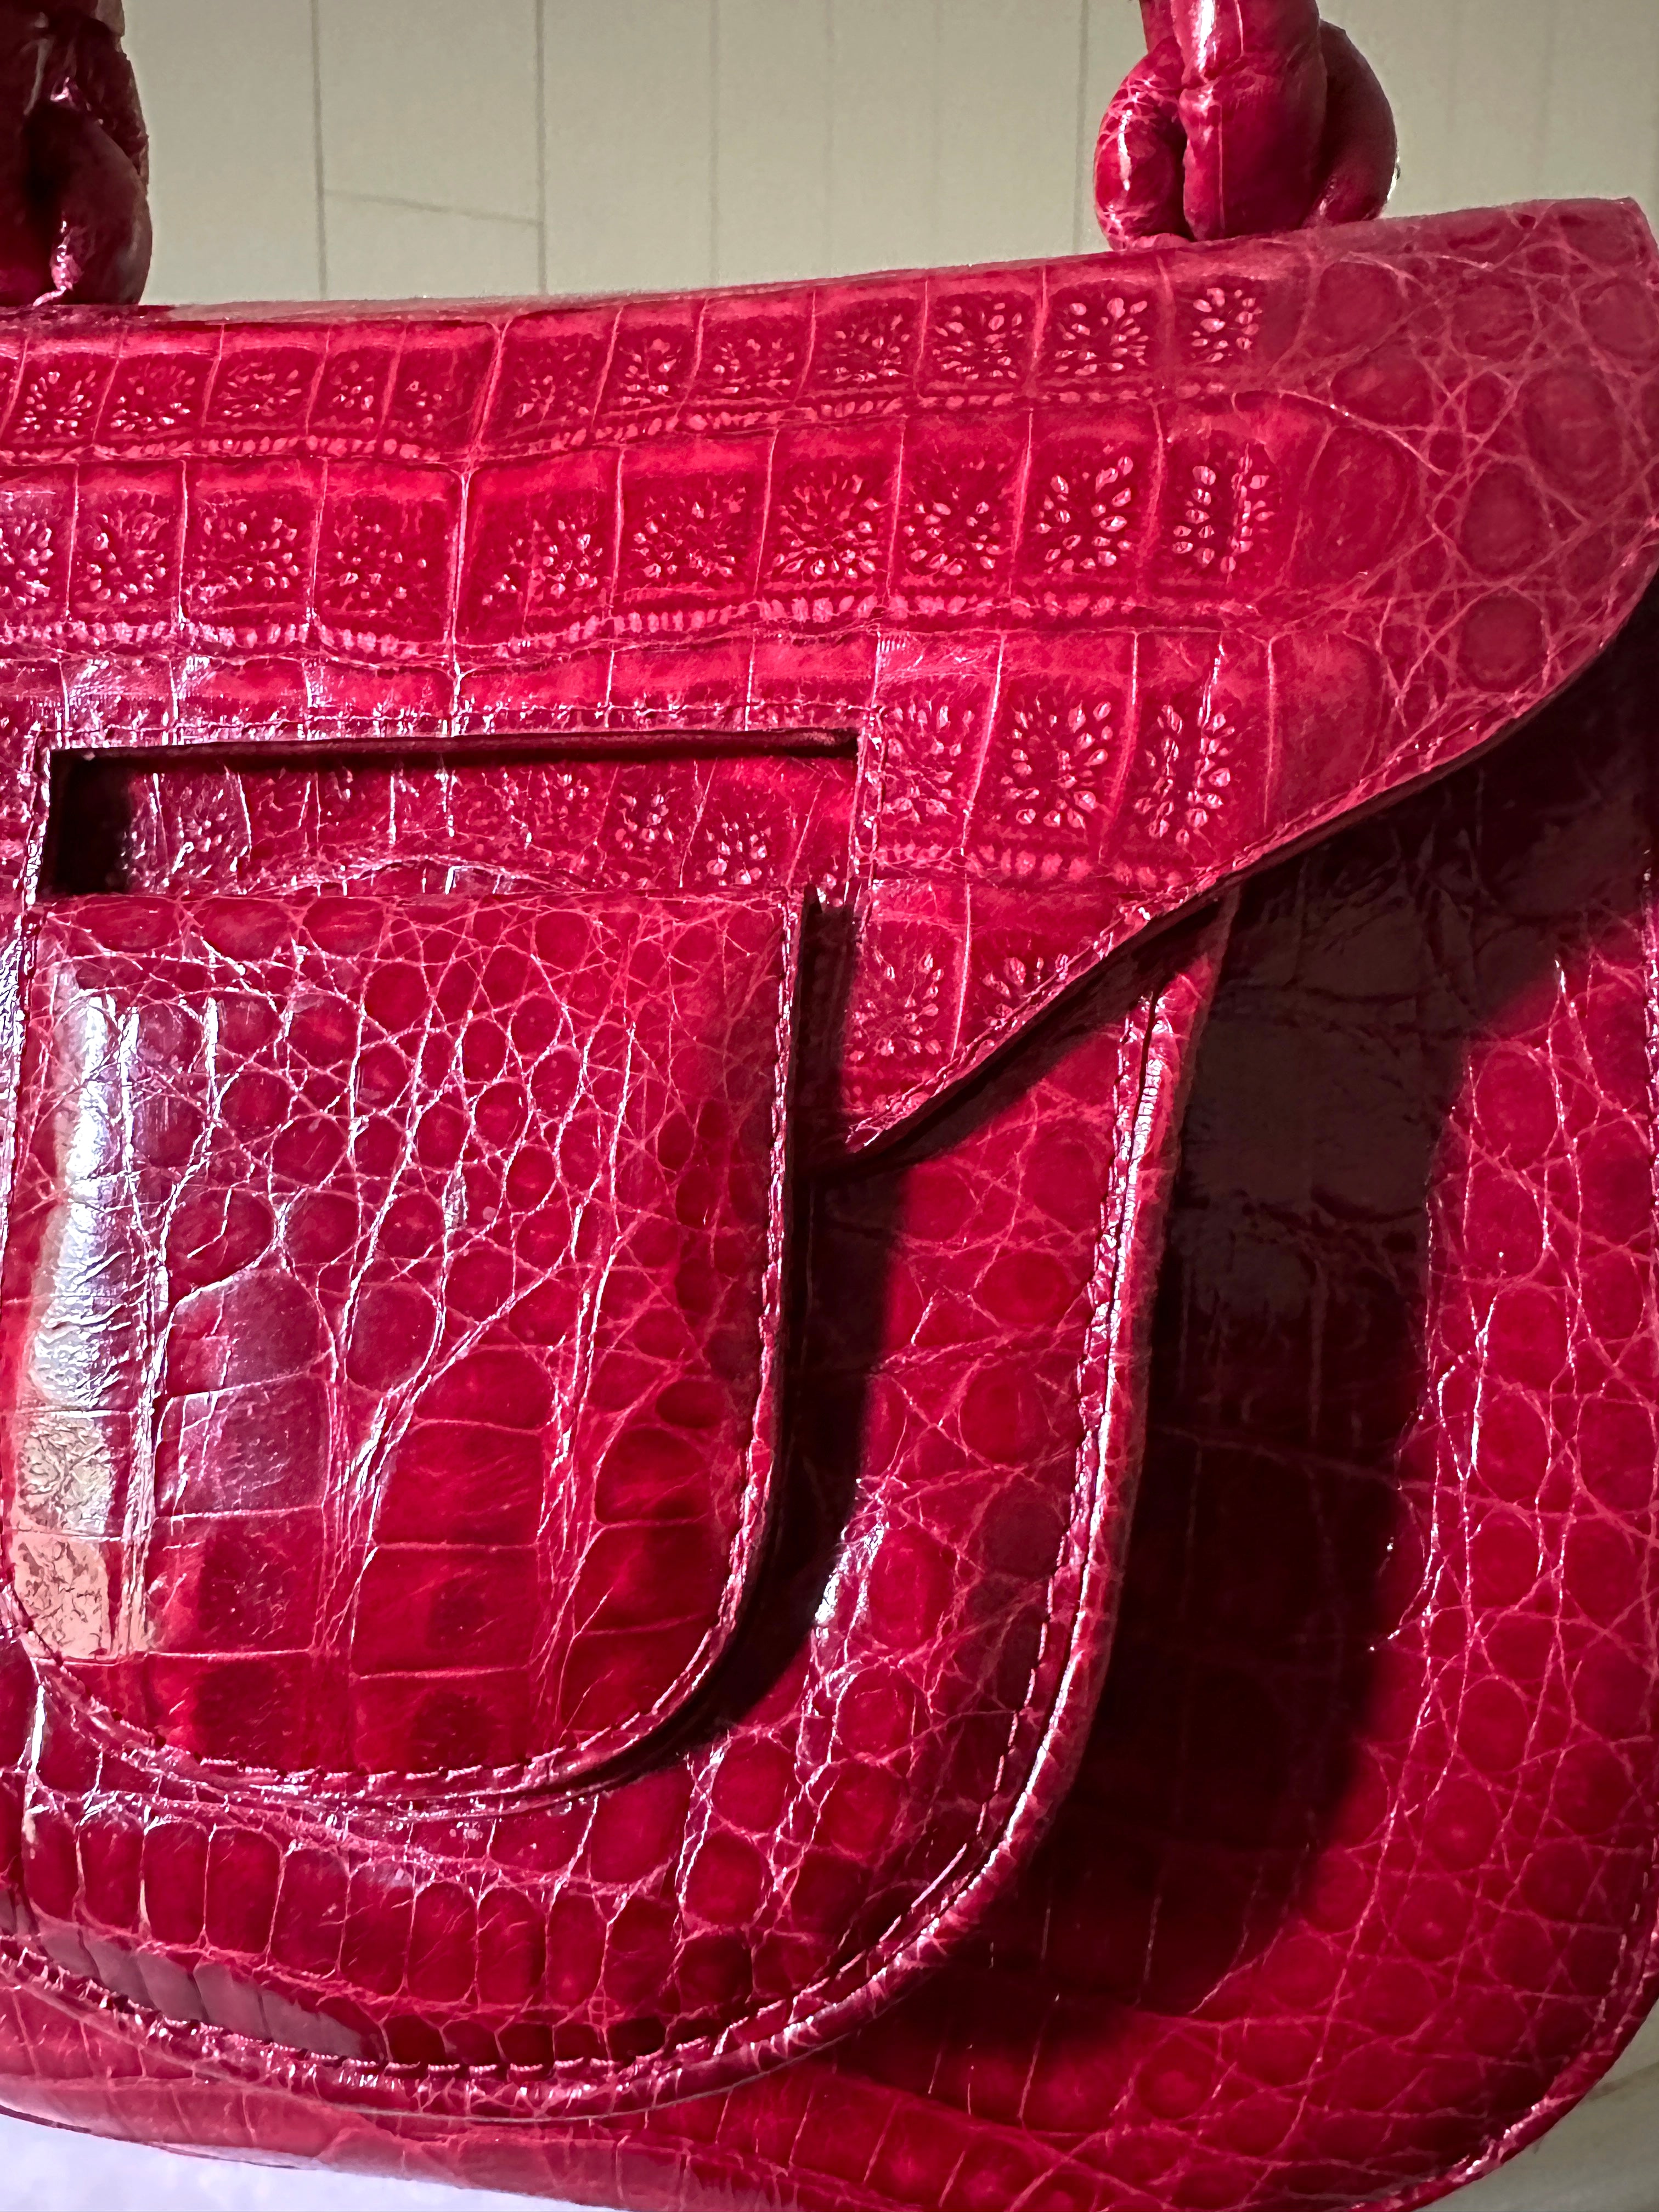 Nancy Gonzalez Crocodile Handle Bag - Burgundy Handle Bags, Handbags -  NAN38250